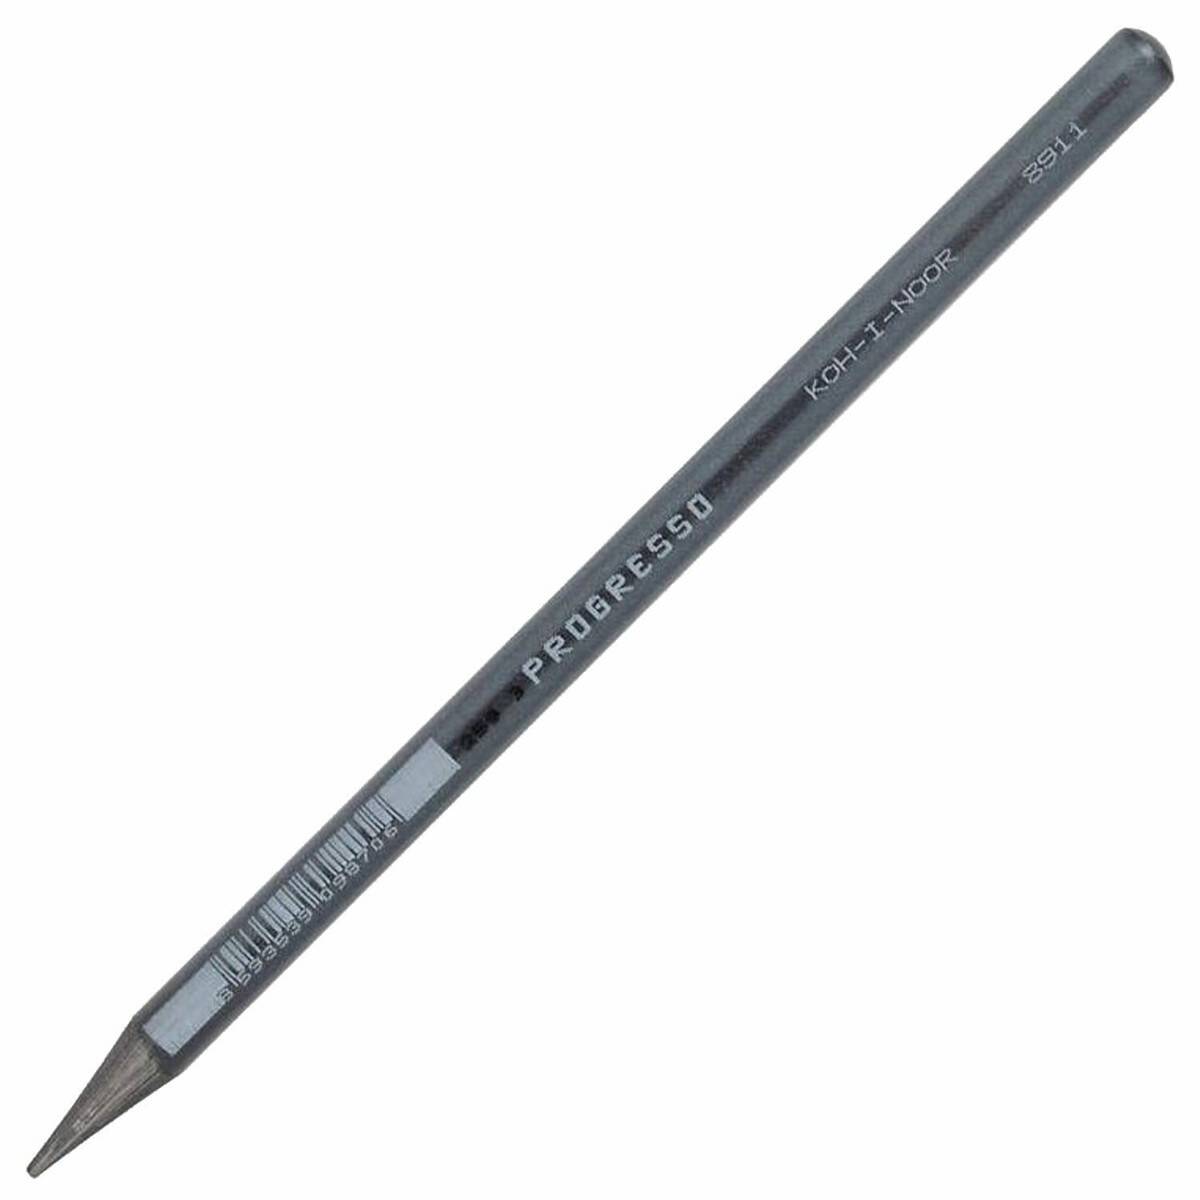 Ołówek Bezdrzewny. 6B PROGRESSO 8911/6B